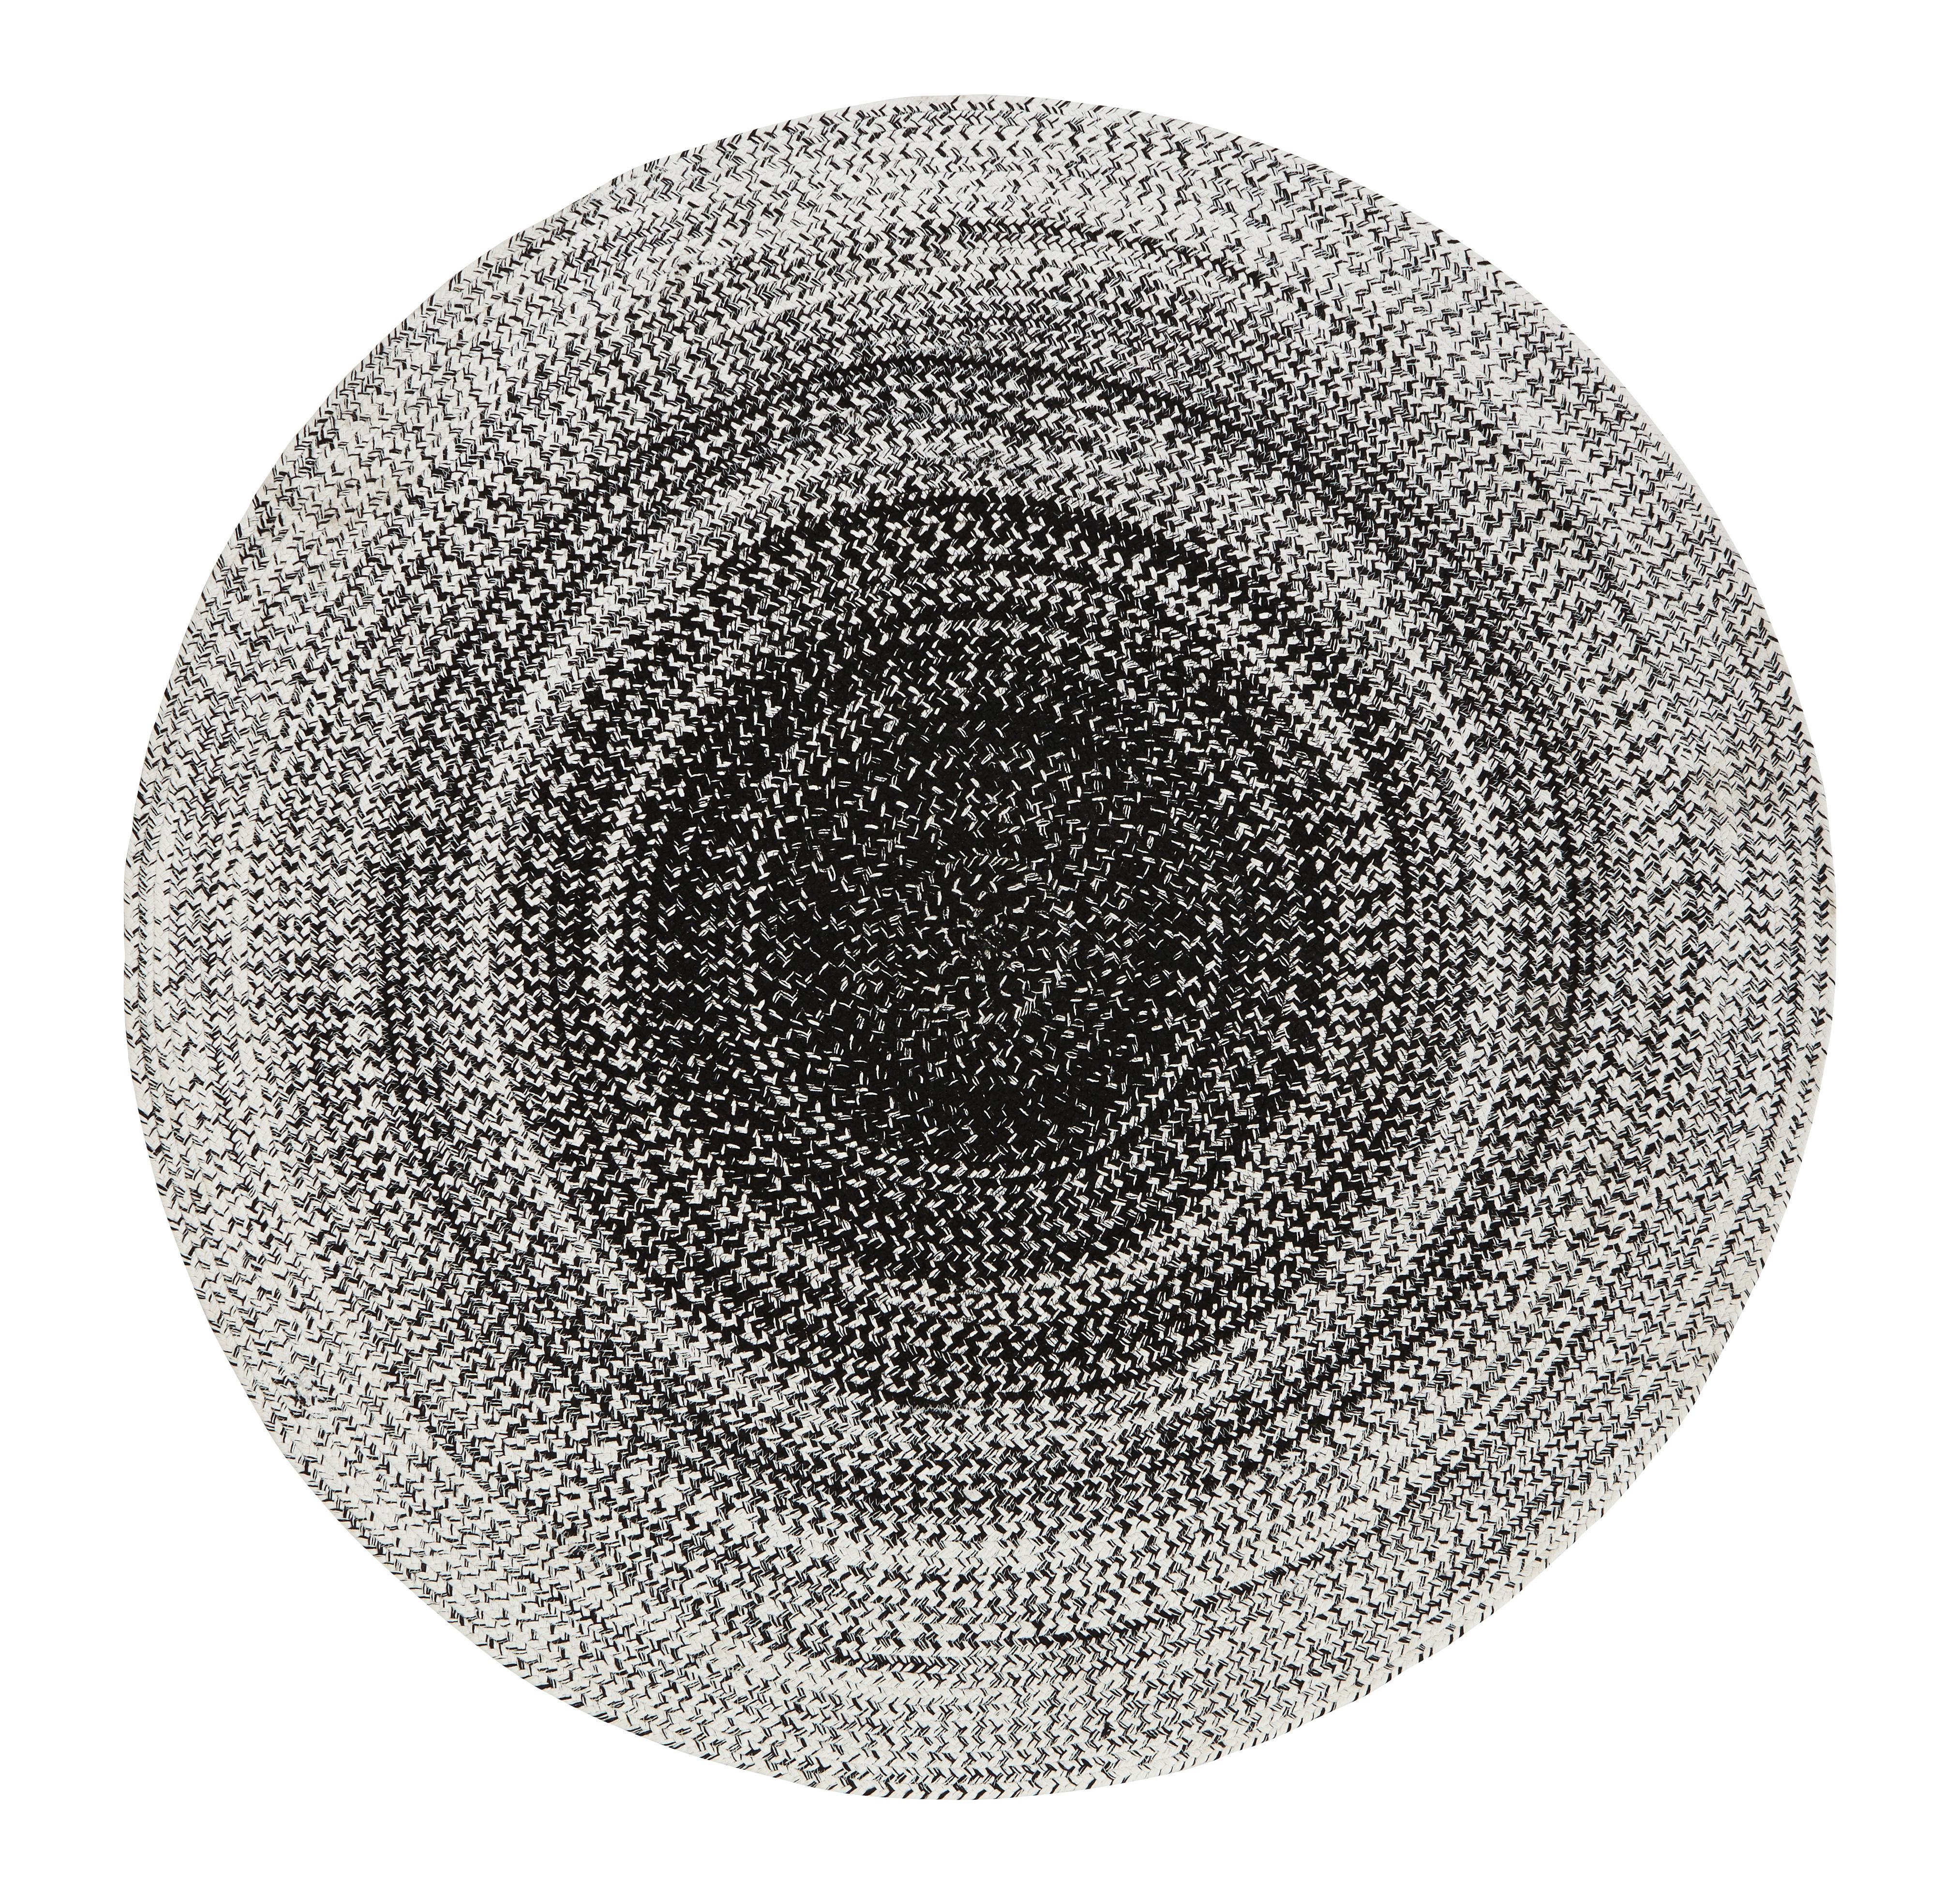 Koberec Tkaný Na Plocho Marie, 160cm - bílá/černá, textil (160cm) - Modern Living